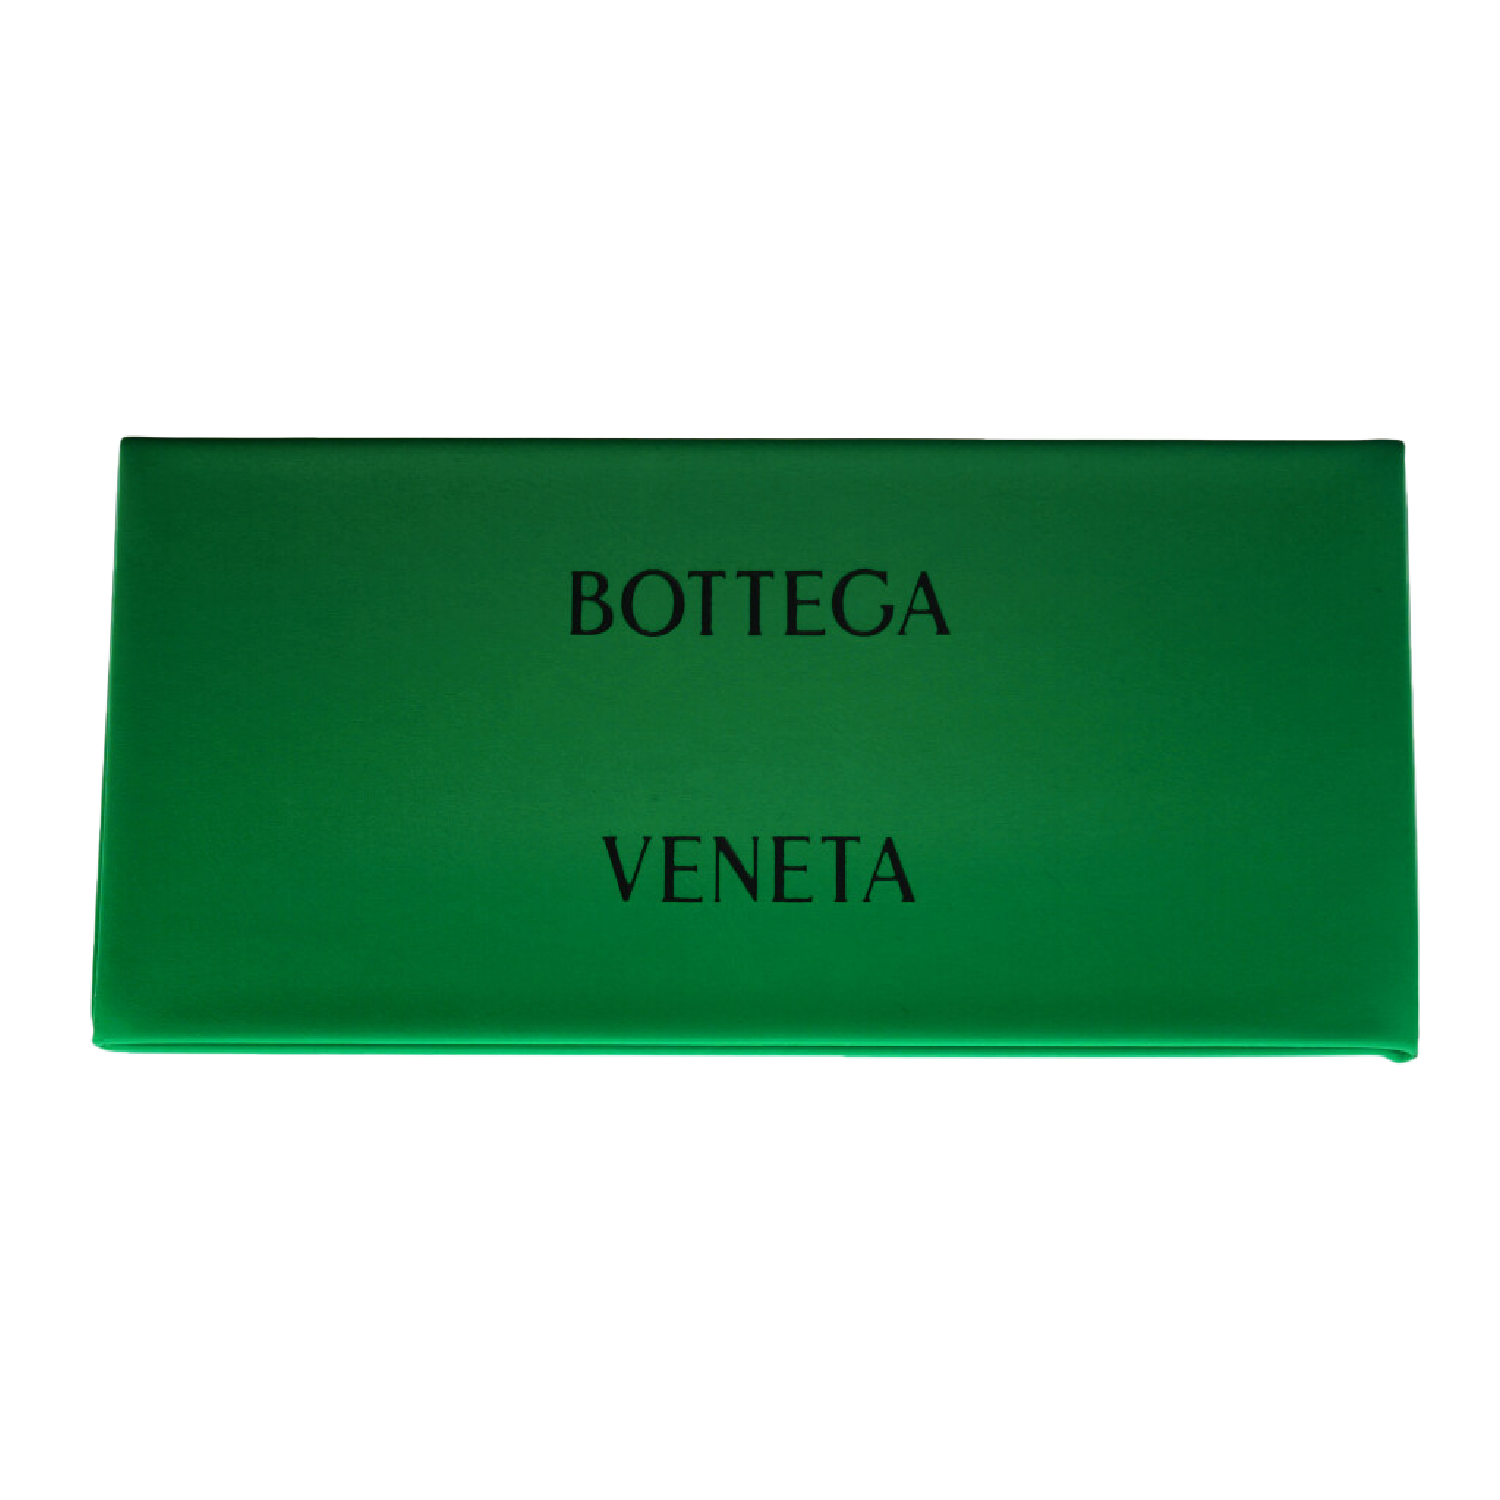 Estuche incluido marca Bottega Veneta